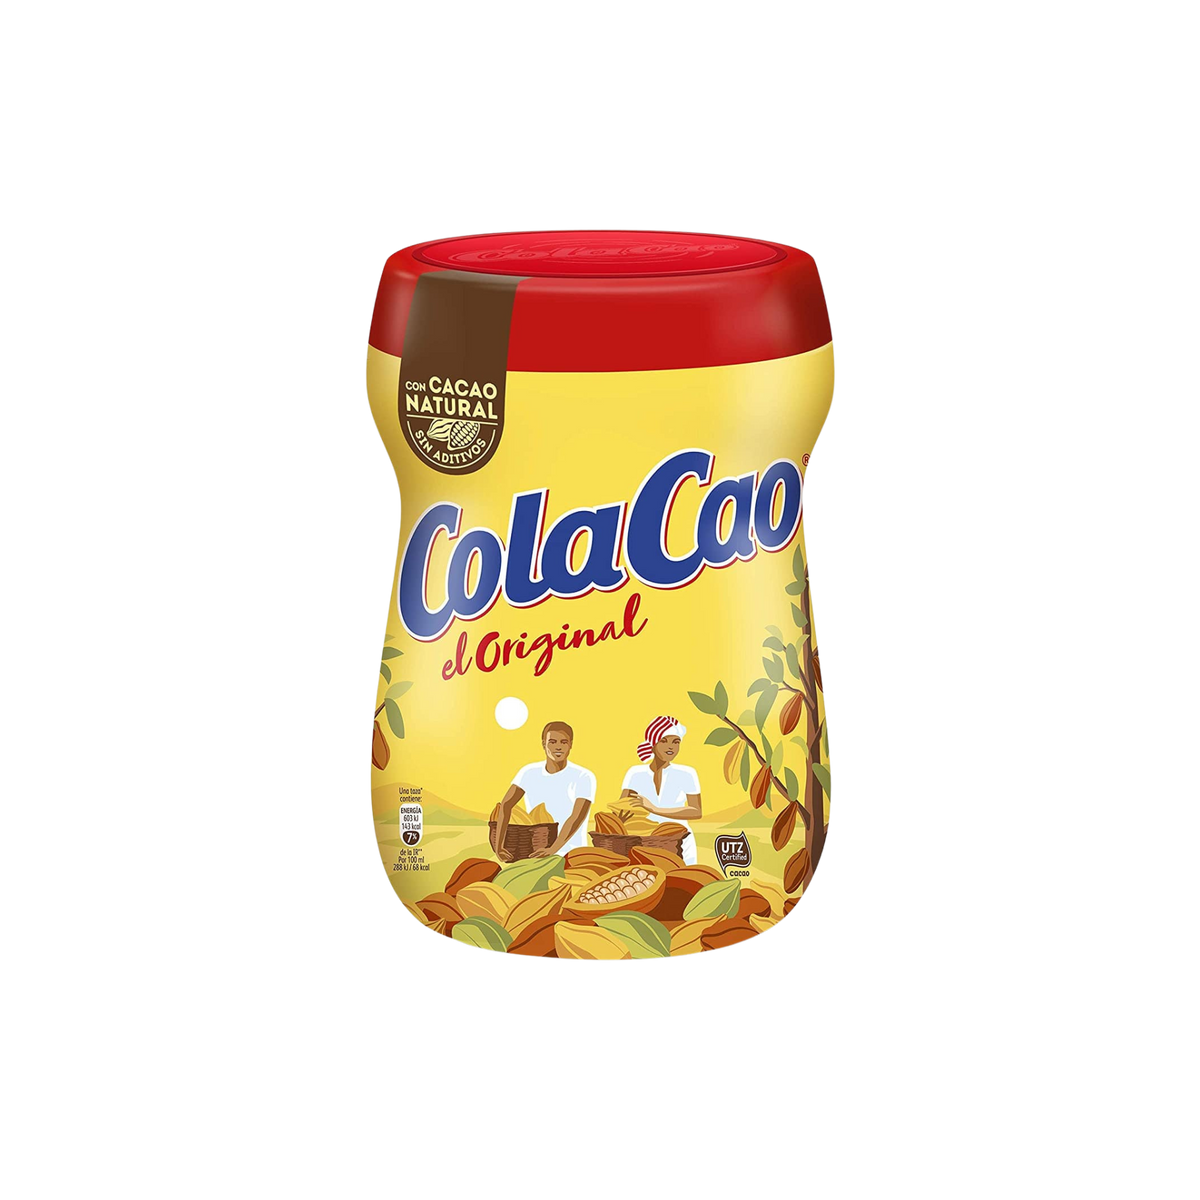  Original Cola Cao Chocolate Drink Mix (13.76 ounces